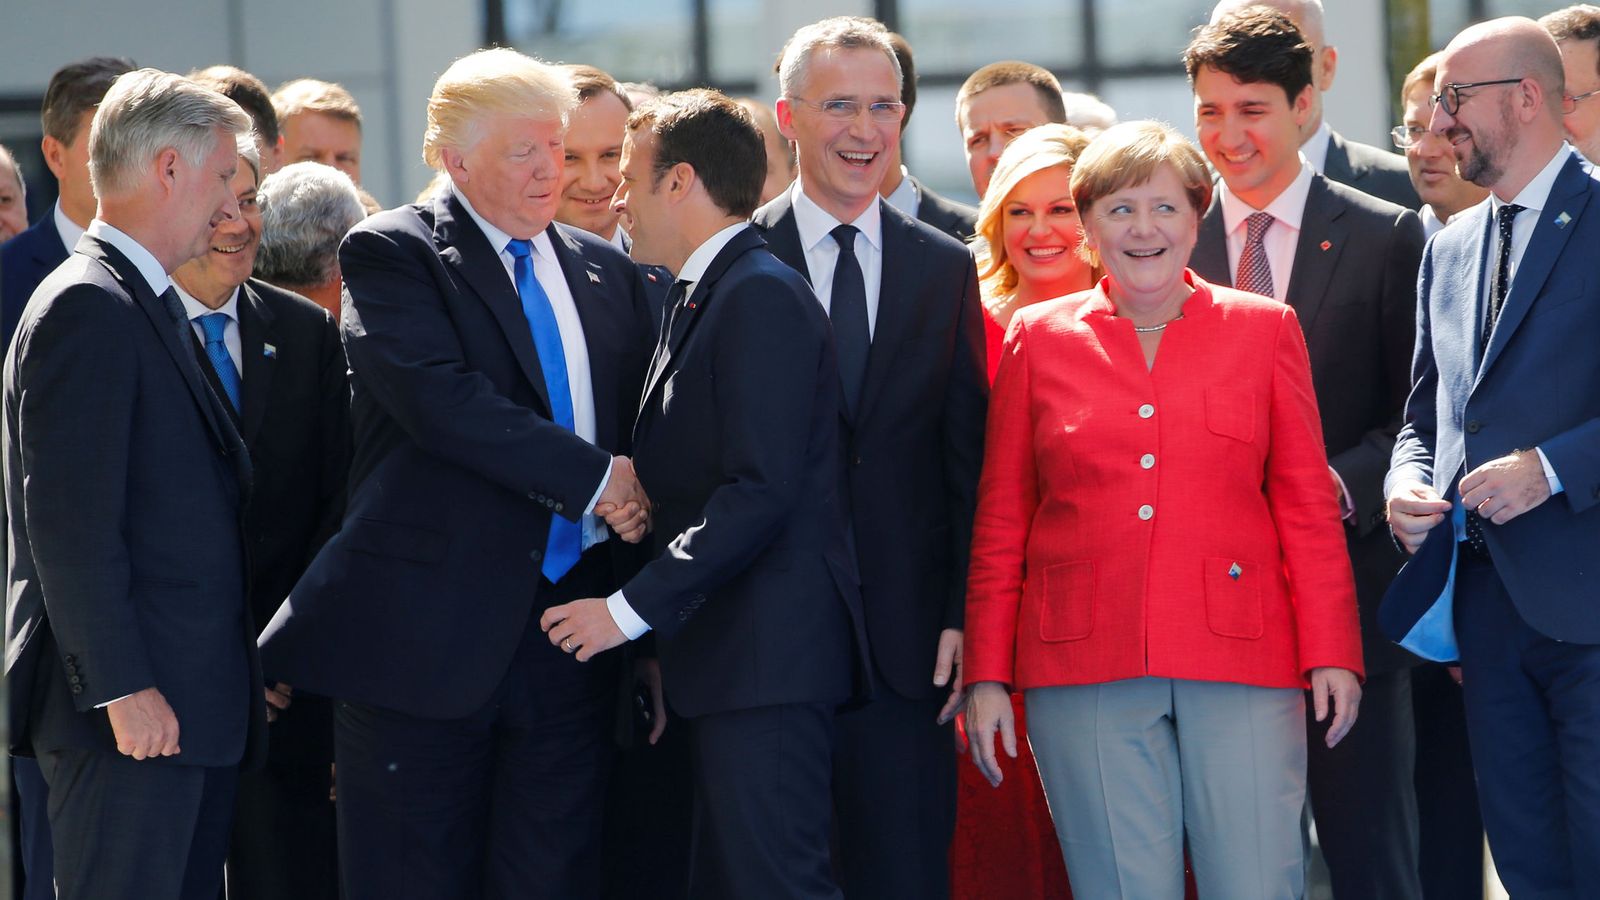 Trump - Los grandes líderes Europeos compiten entre si por la atencion de Trump El-dia-que-macron-demostro-a-trump-que-podia-ser-tan-chulo-como-el